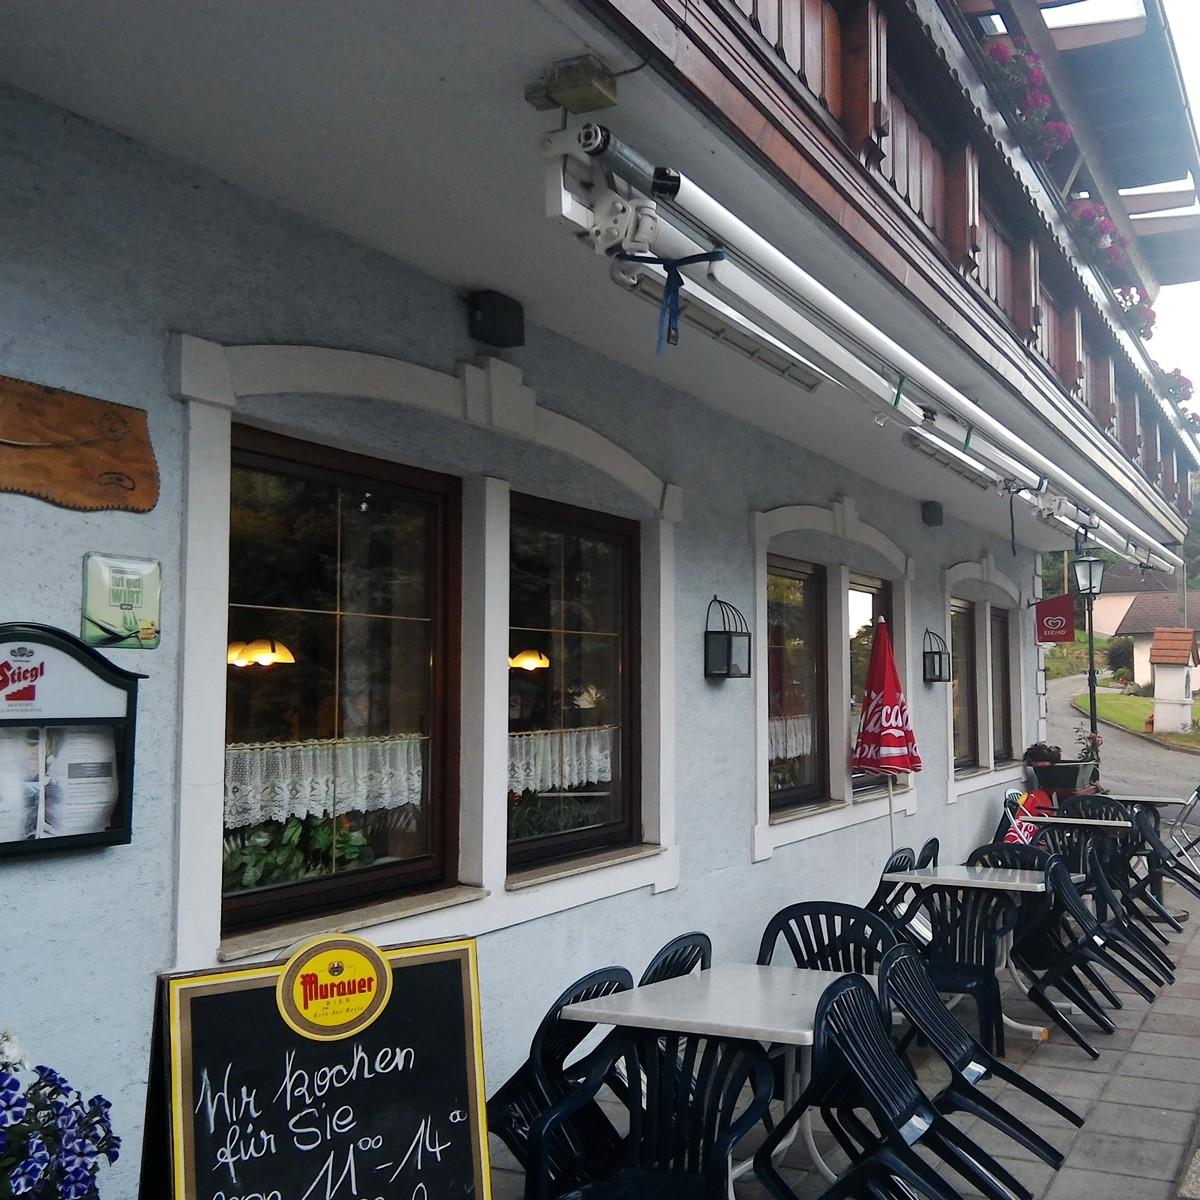 Restaurant "Gasthaus Dürregger" in Leiben